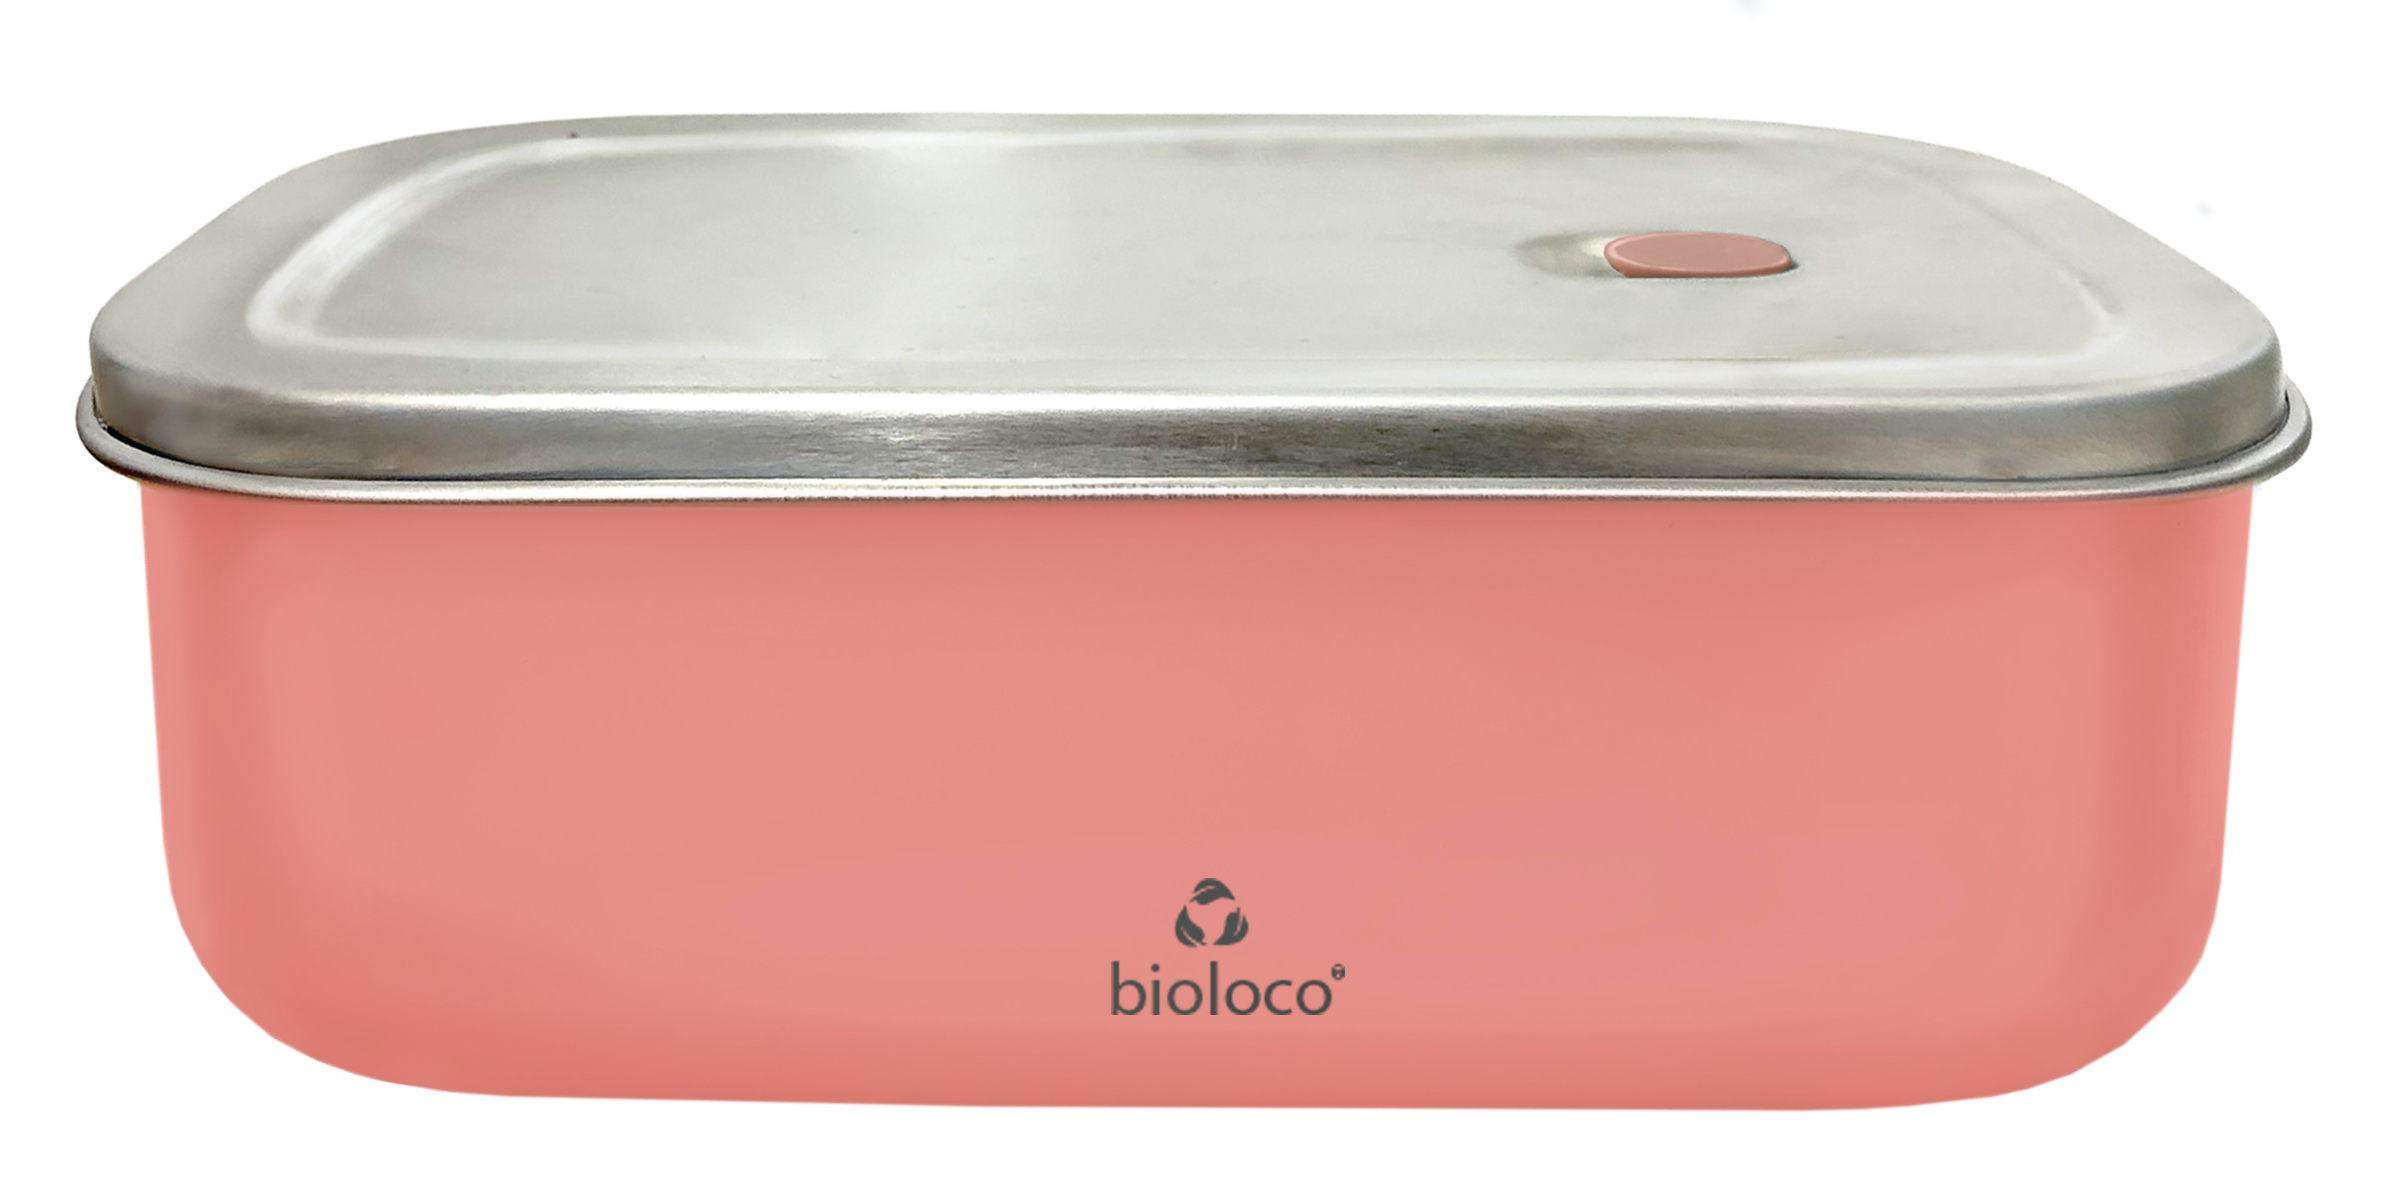 Zobrazit detail výrobku Bioloco Nerezový svačinový box 425 g petrolejový